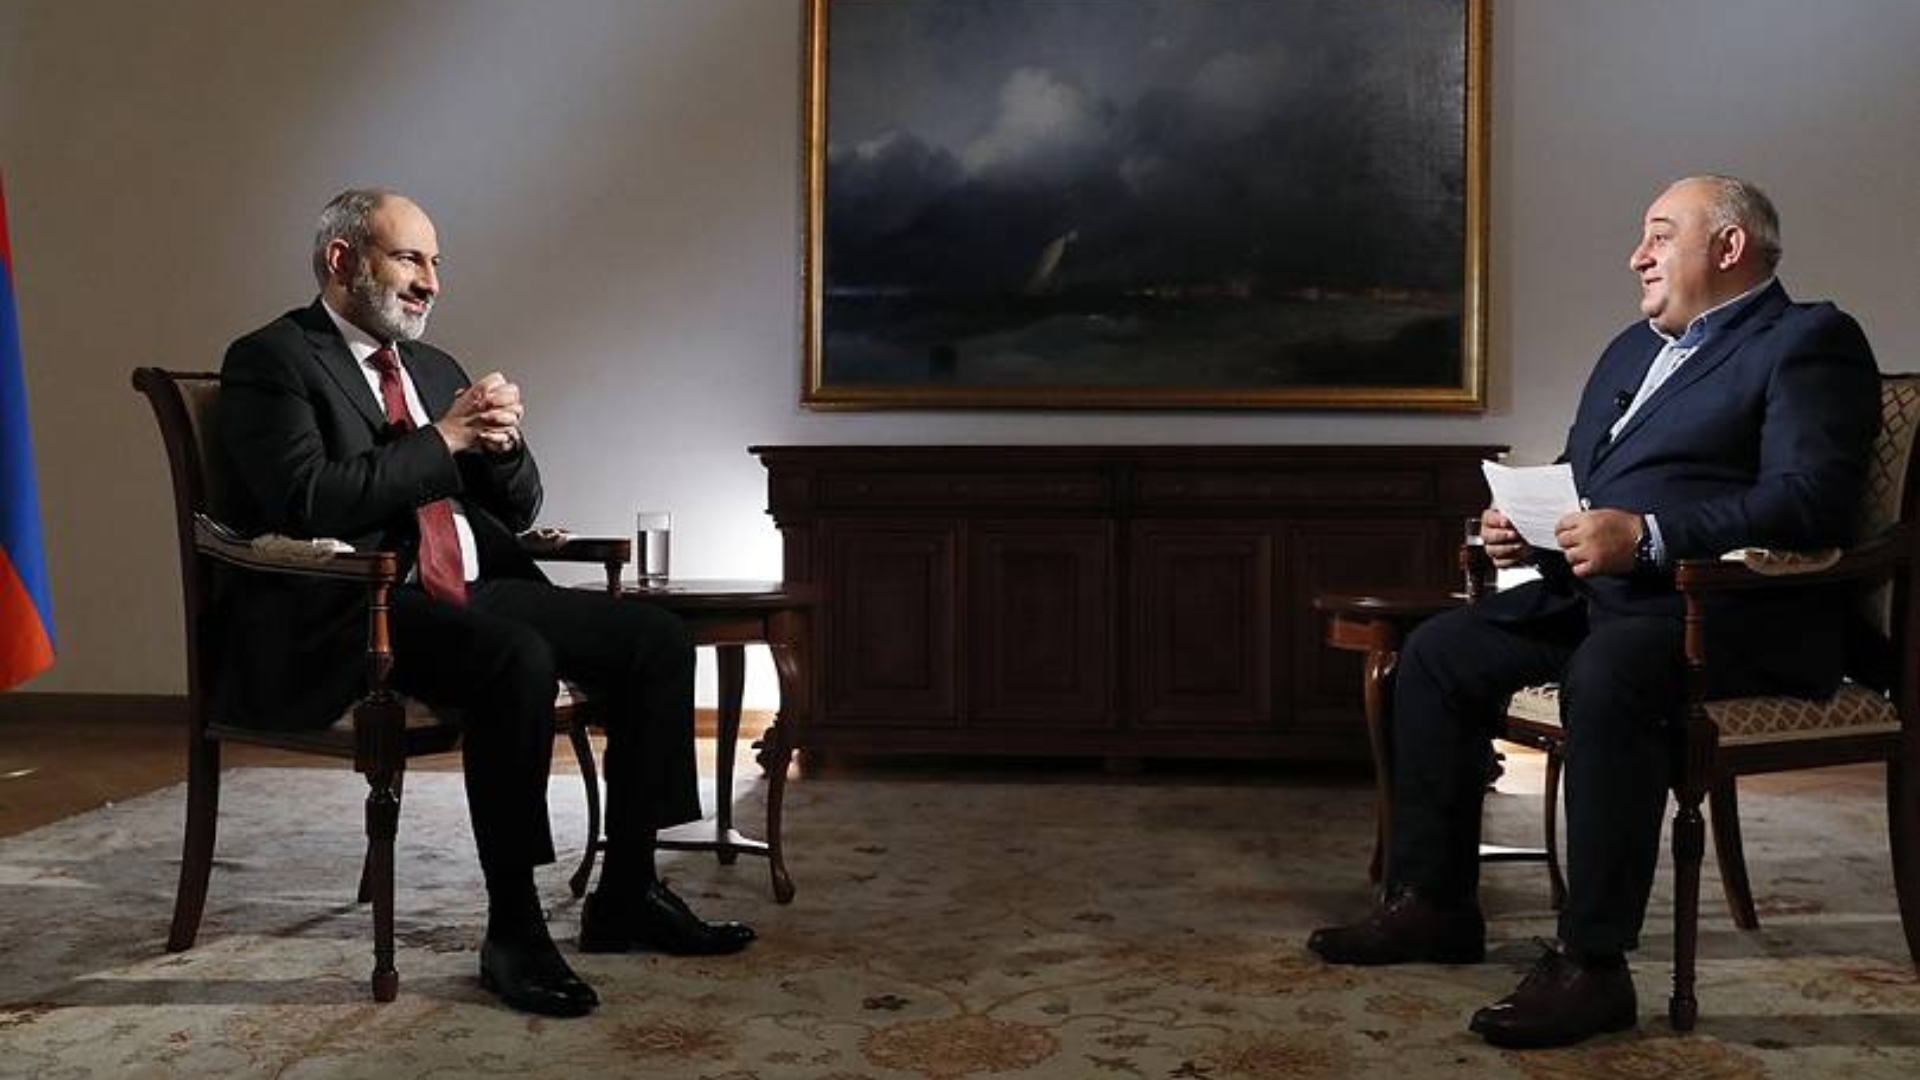 Интервью премьер министра. Пашинян интервью. Пашинян интервью чешскому телеканалу. Дебаты между Пашиняном и Алиевым на мюнхенской конференции. Инаугурация Эрдогана в 2023 году Пашинян.